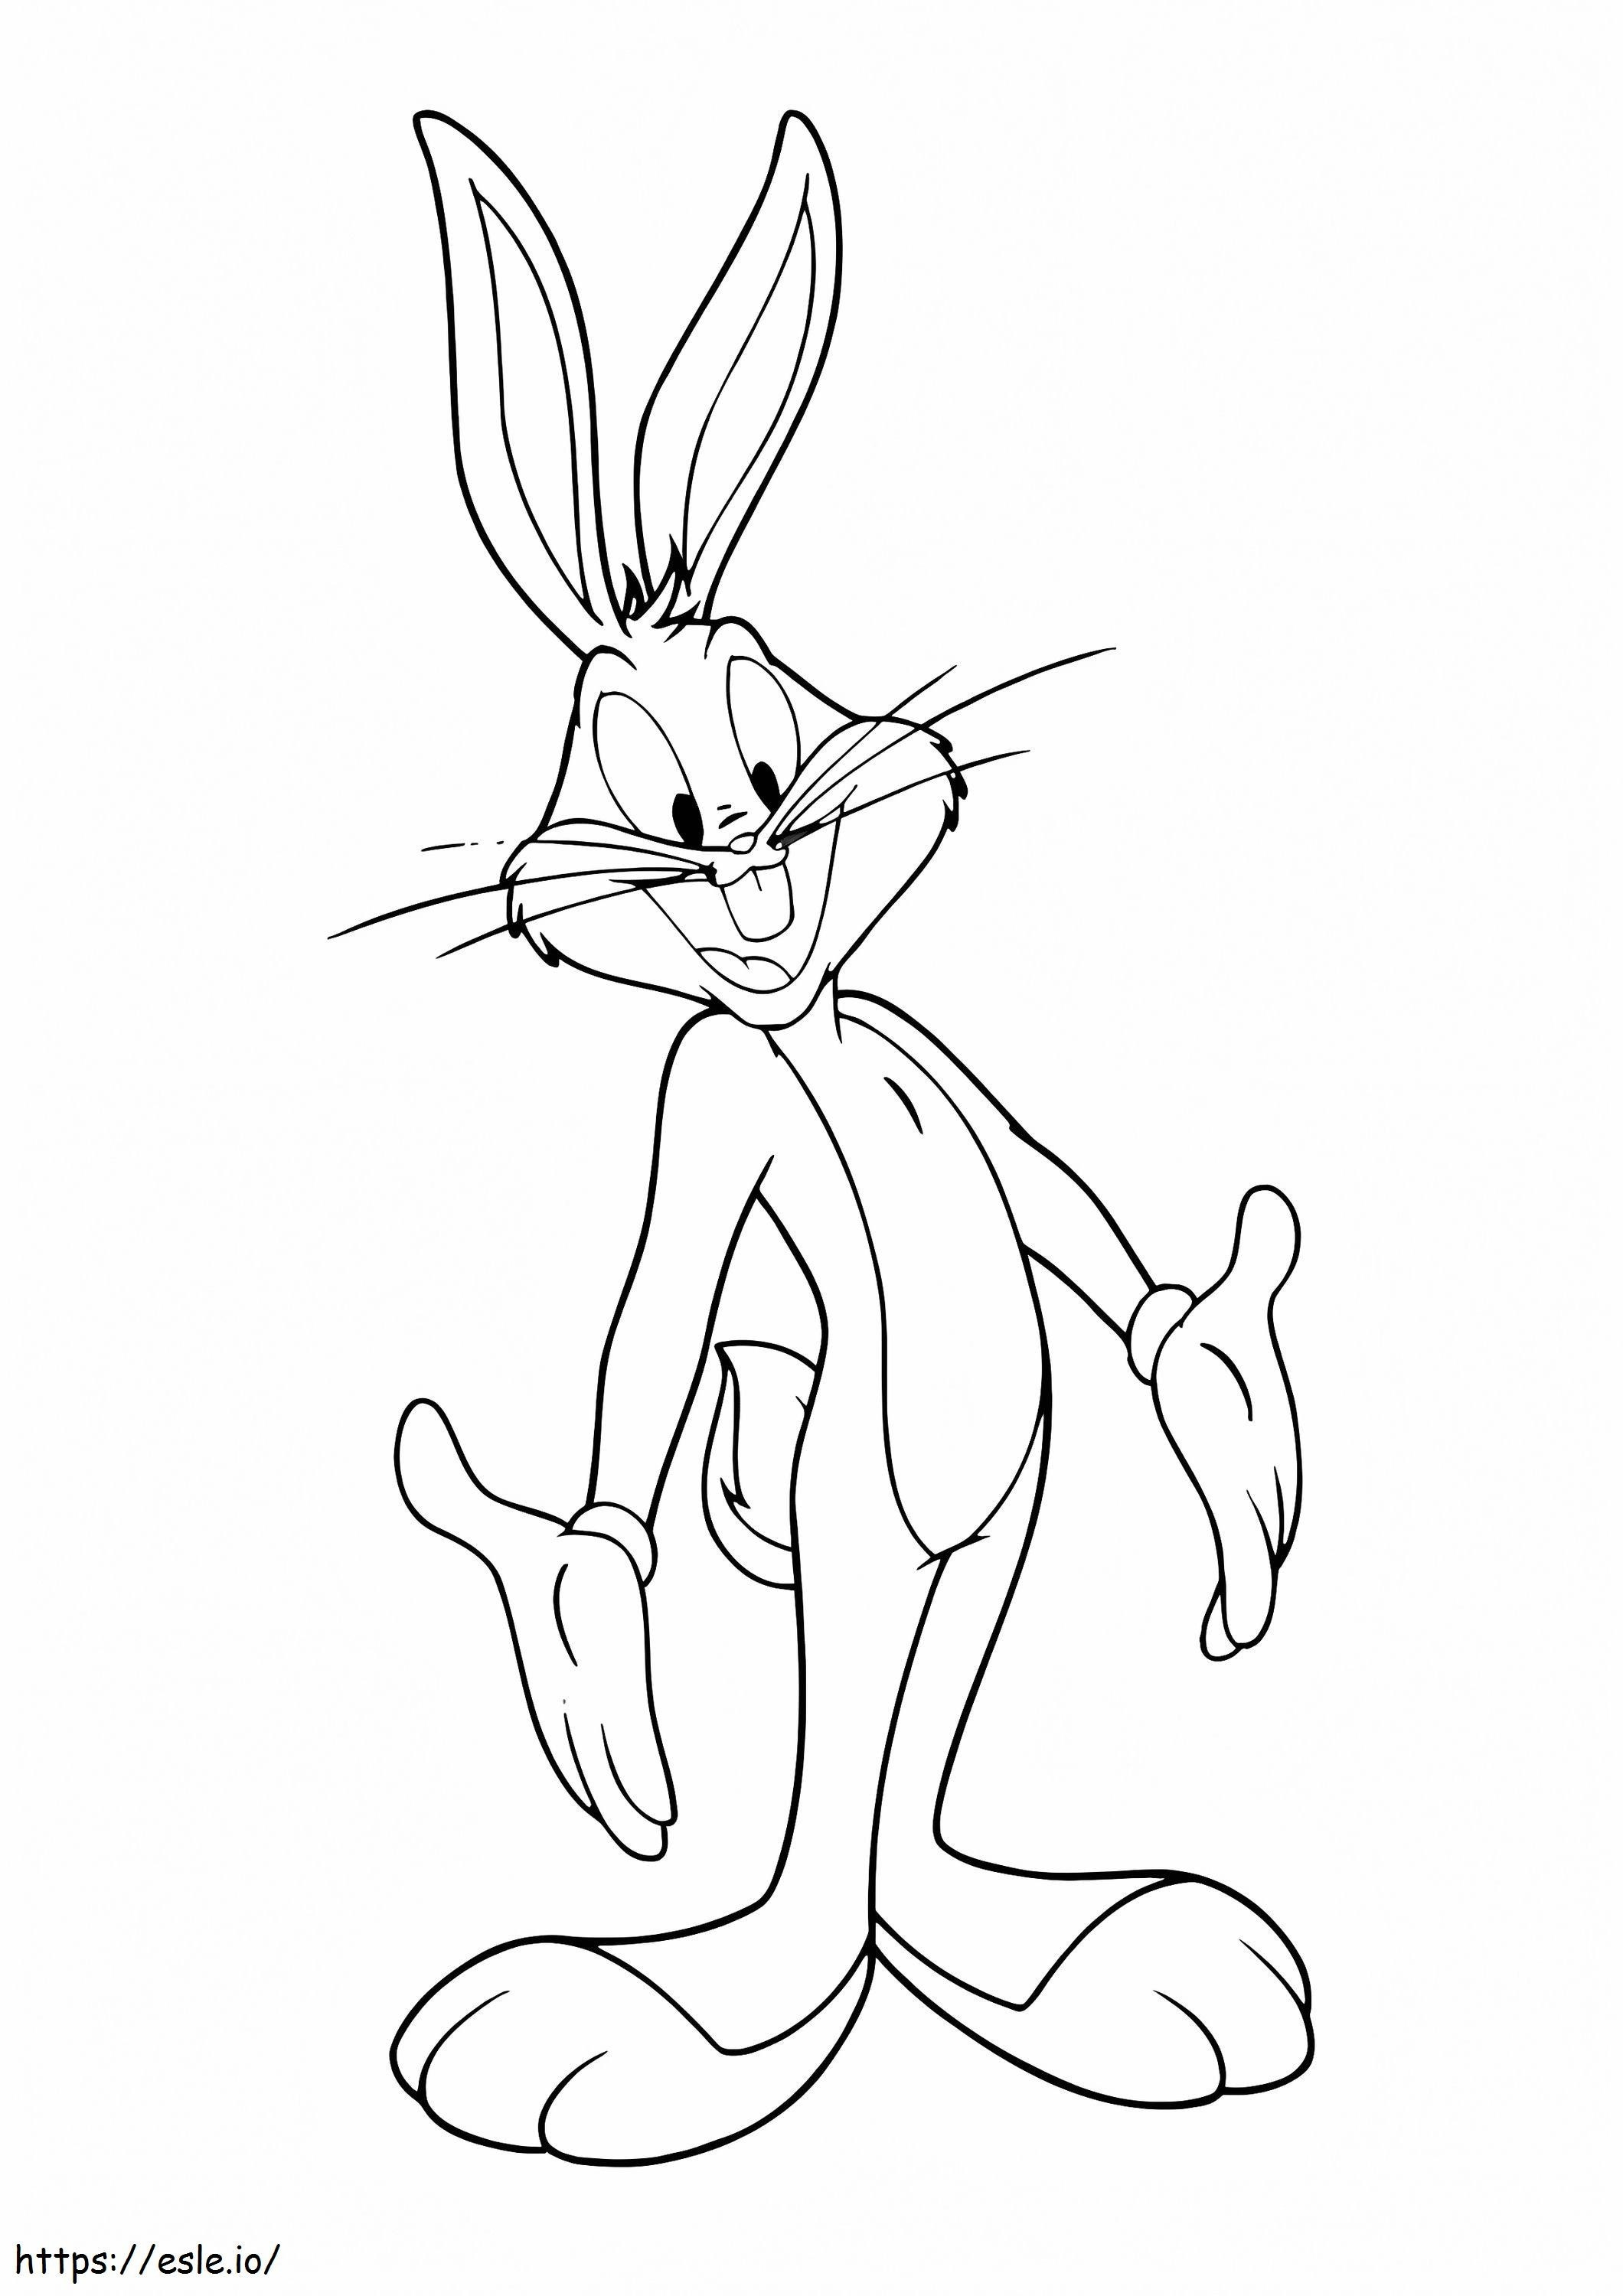 Coloriage 1526562269 Bugs Bunny souriant A4 à imprimer dessin